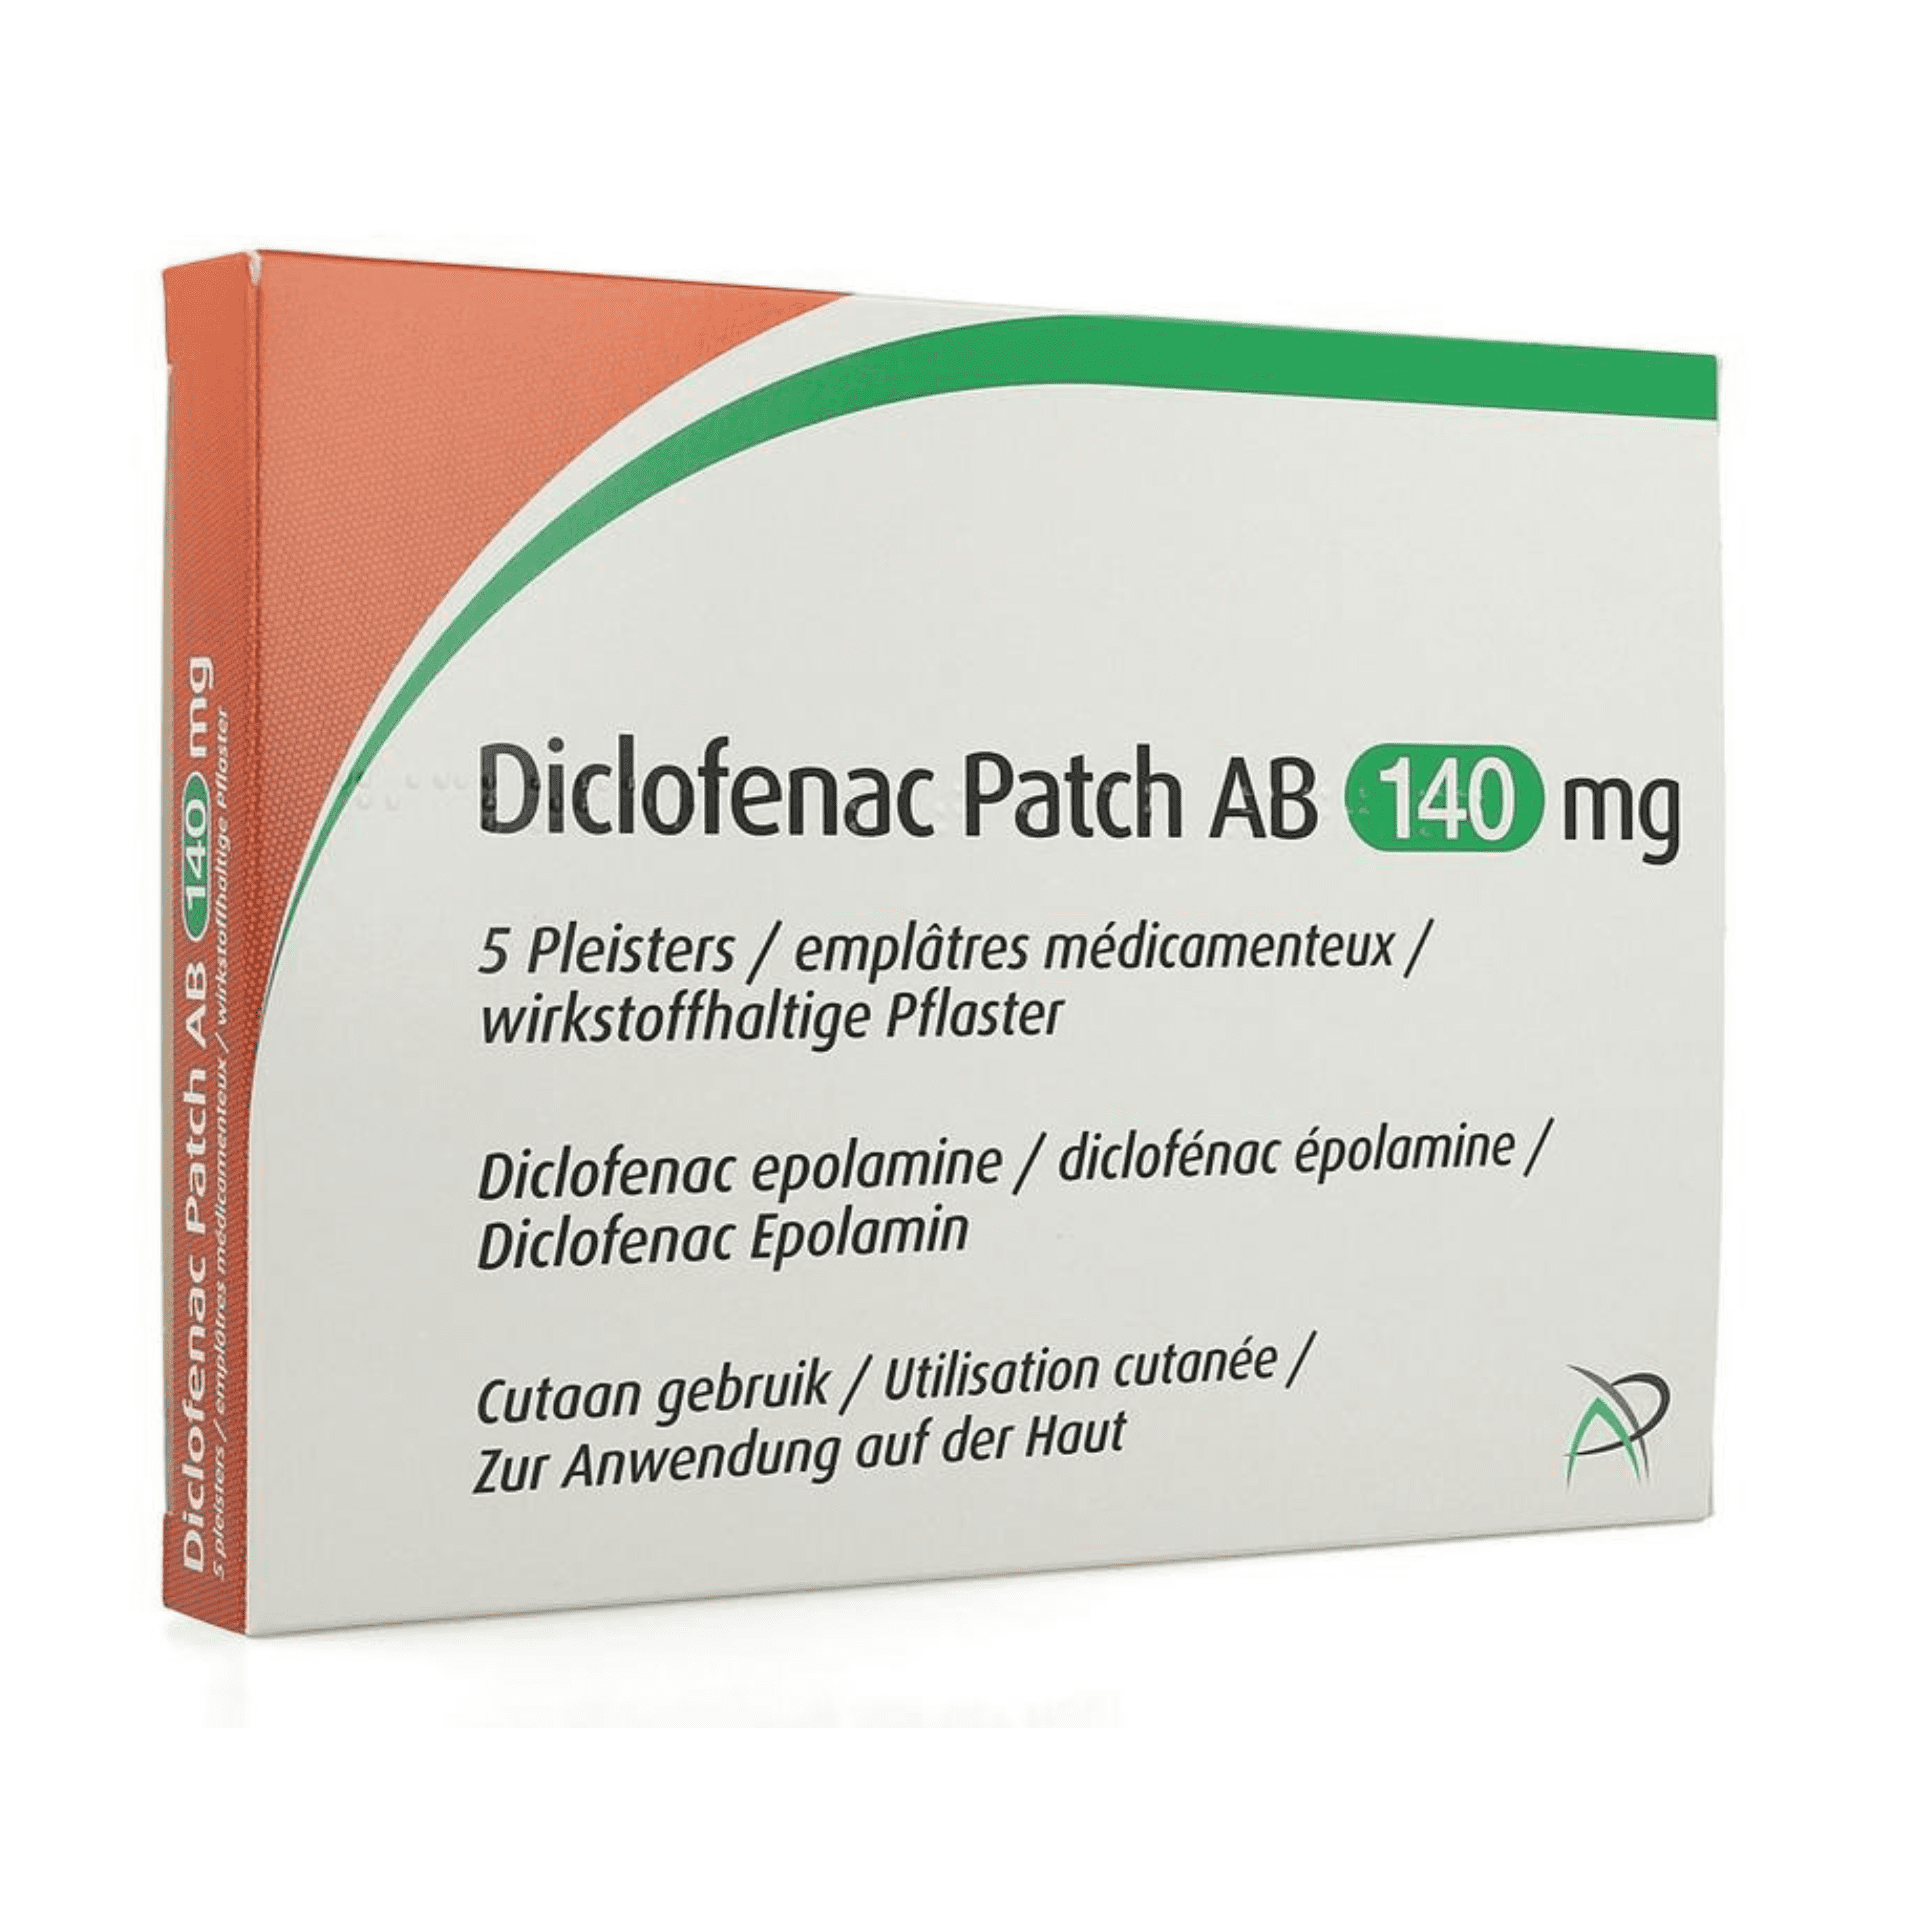 Diclofenac Patch AB 140 mg Pleister 